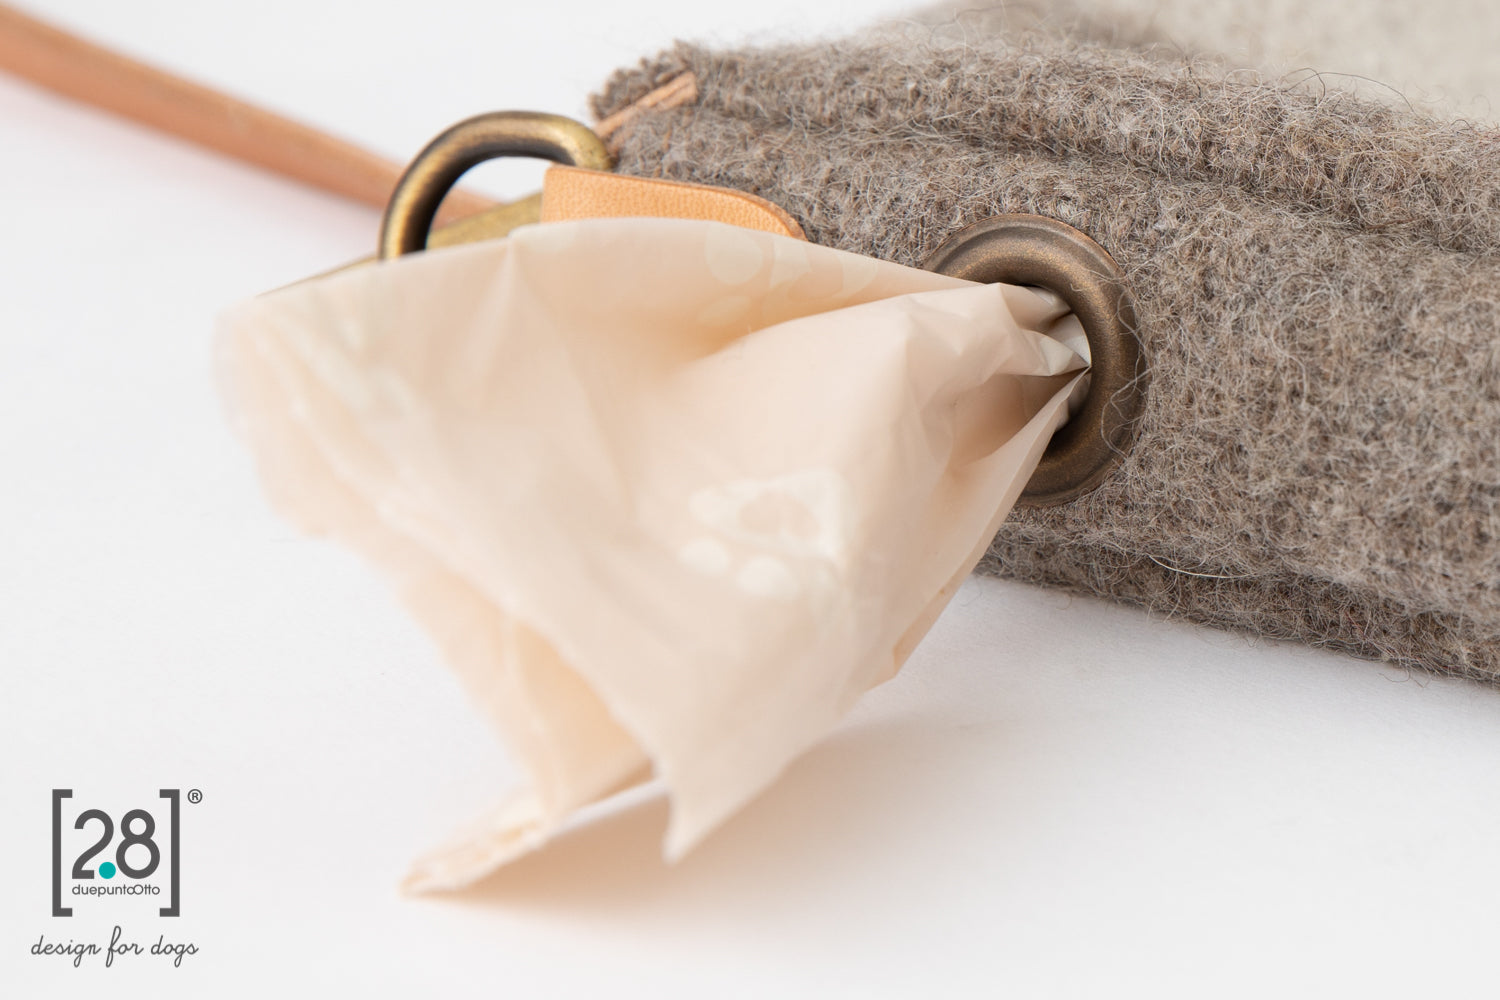 2.8 duepuntootto mini inge wool pochette natural white handtasche mit kotbeutelspender